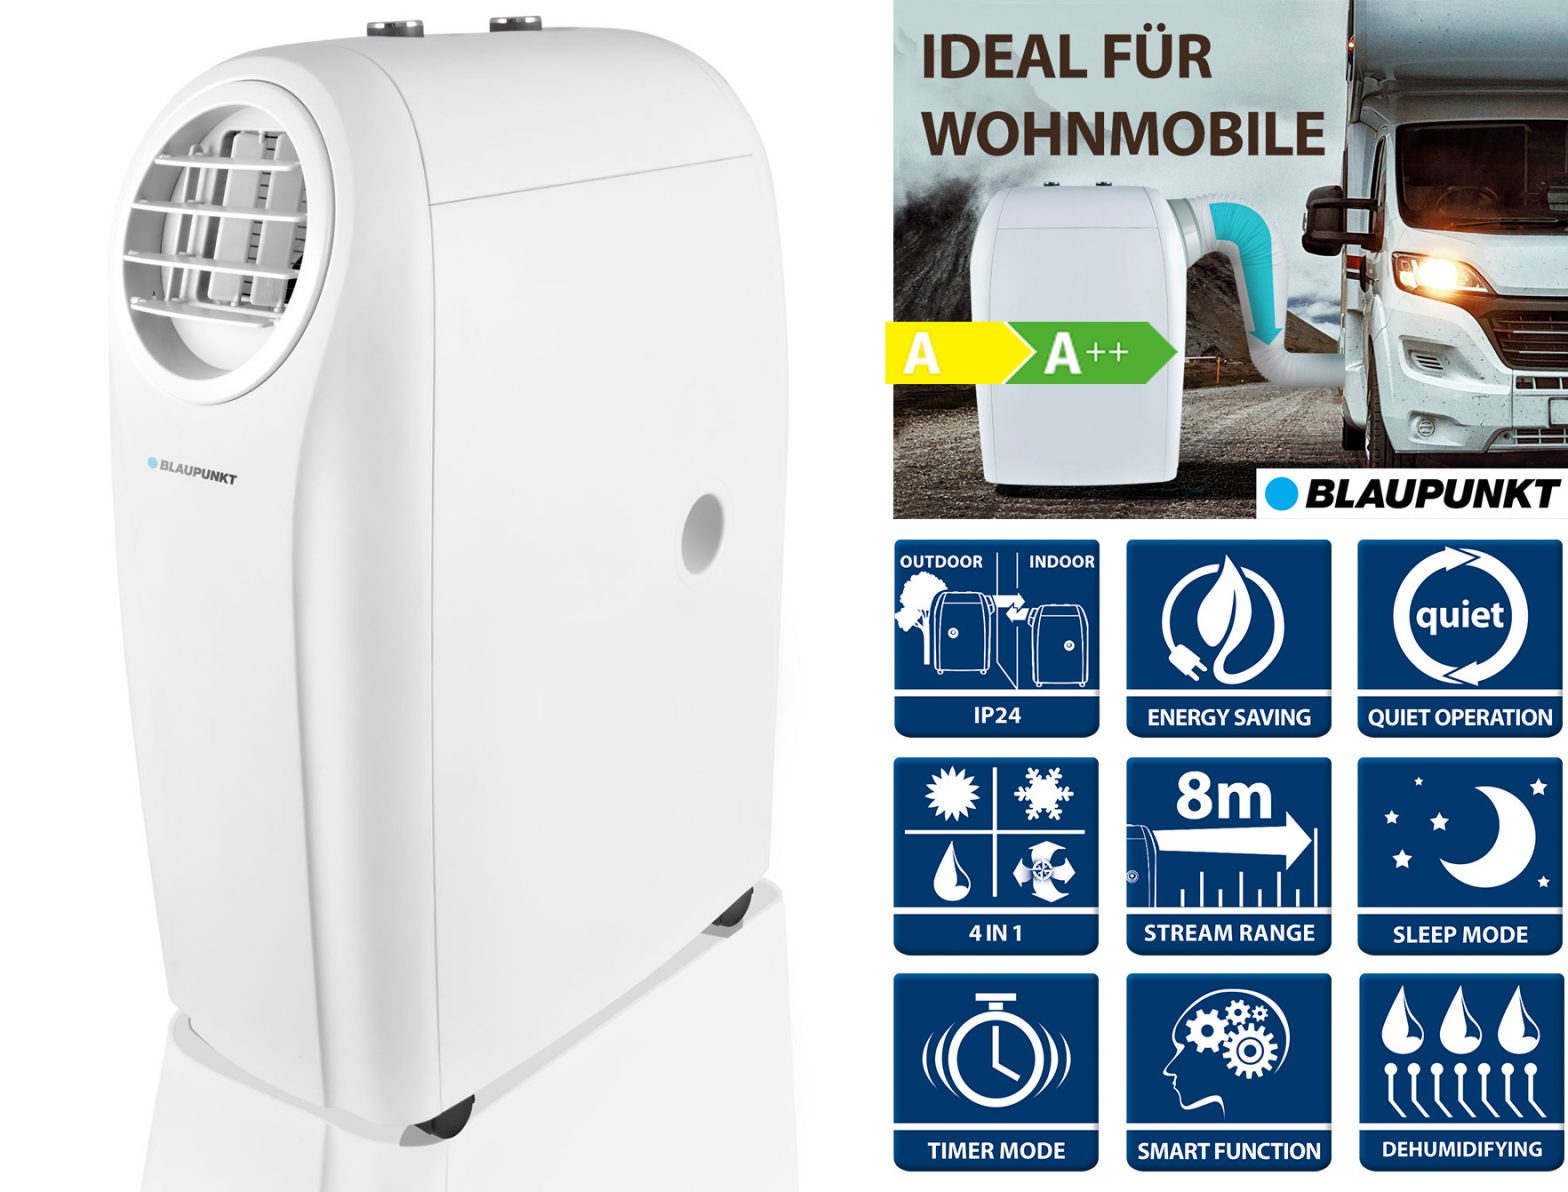 Mobiles Klimagerät Blaupunkt Arrifana 1414L - 4 kW für Räume bis 45 qm, Ideal für Wohnmobile